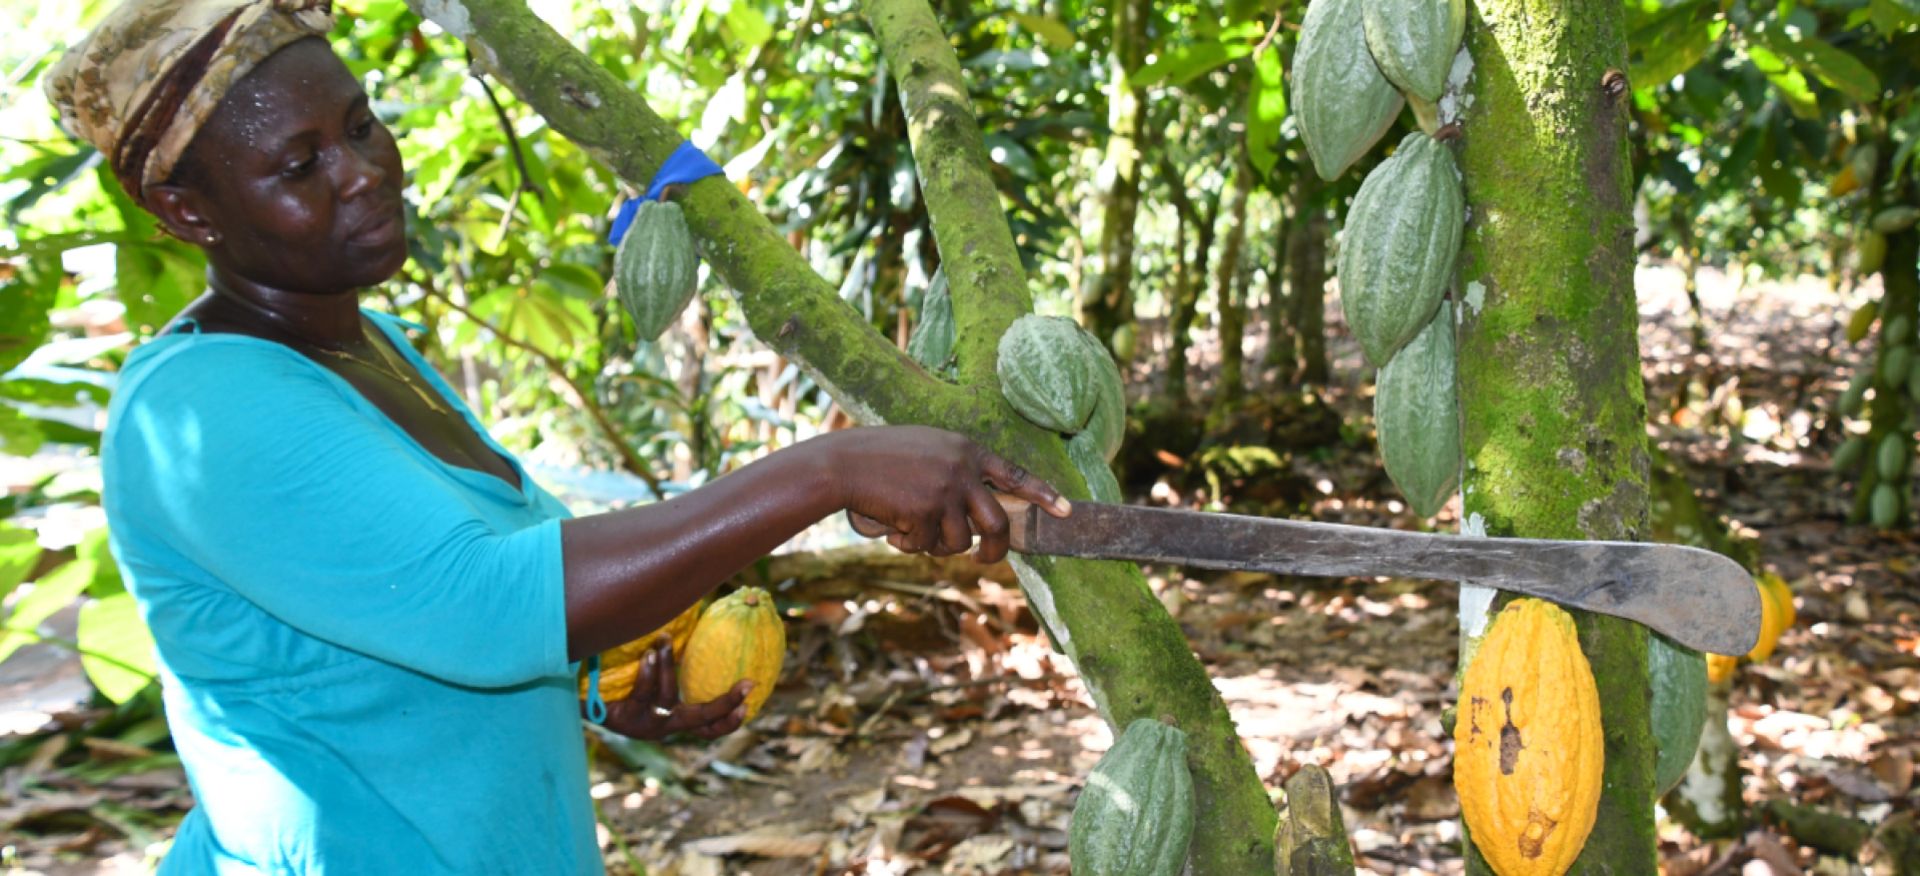 Frau schneidet mit einer Machete eine Kakaofrucht vom Baum